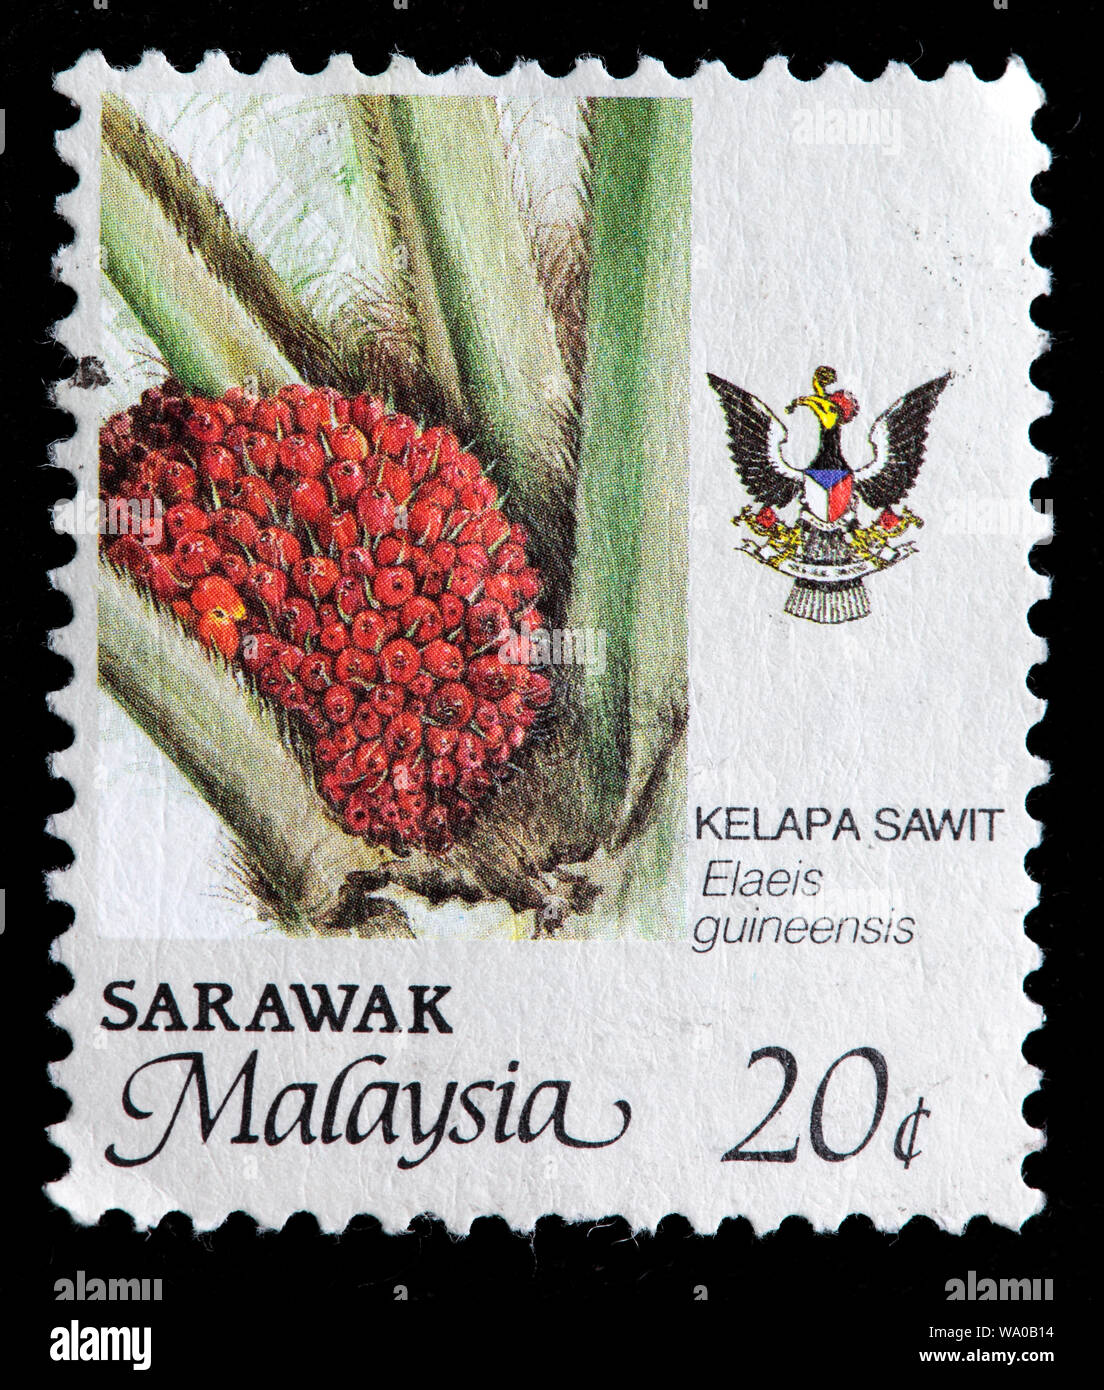 Elaeis guineensis, aceite de palma, sello, Sarawak, Malasia, 1986 Foto de stock